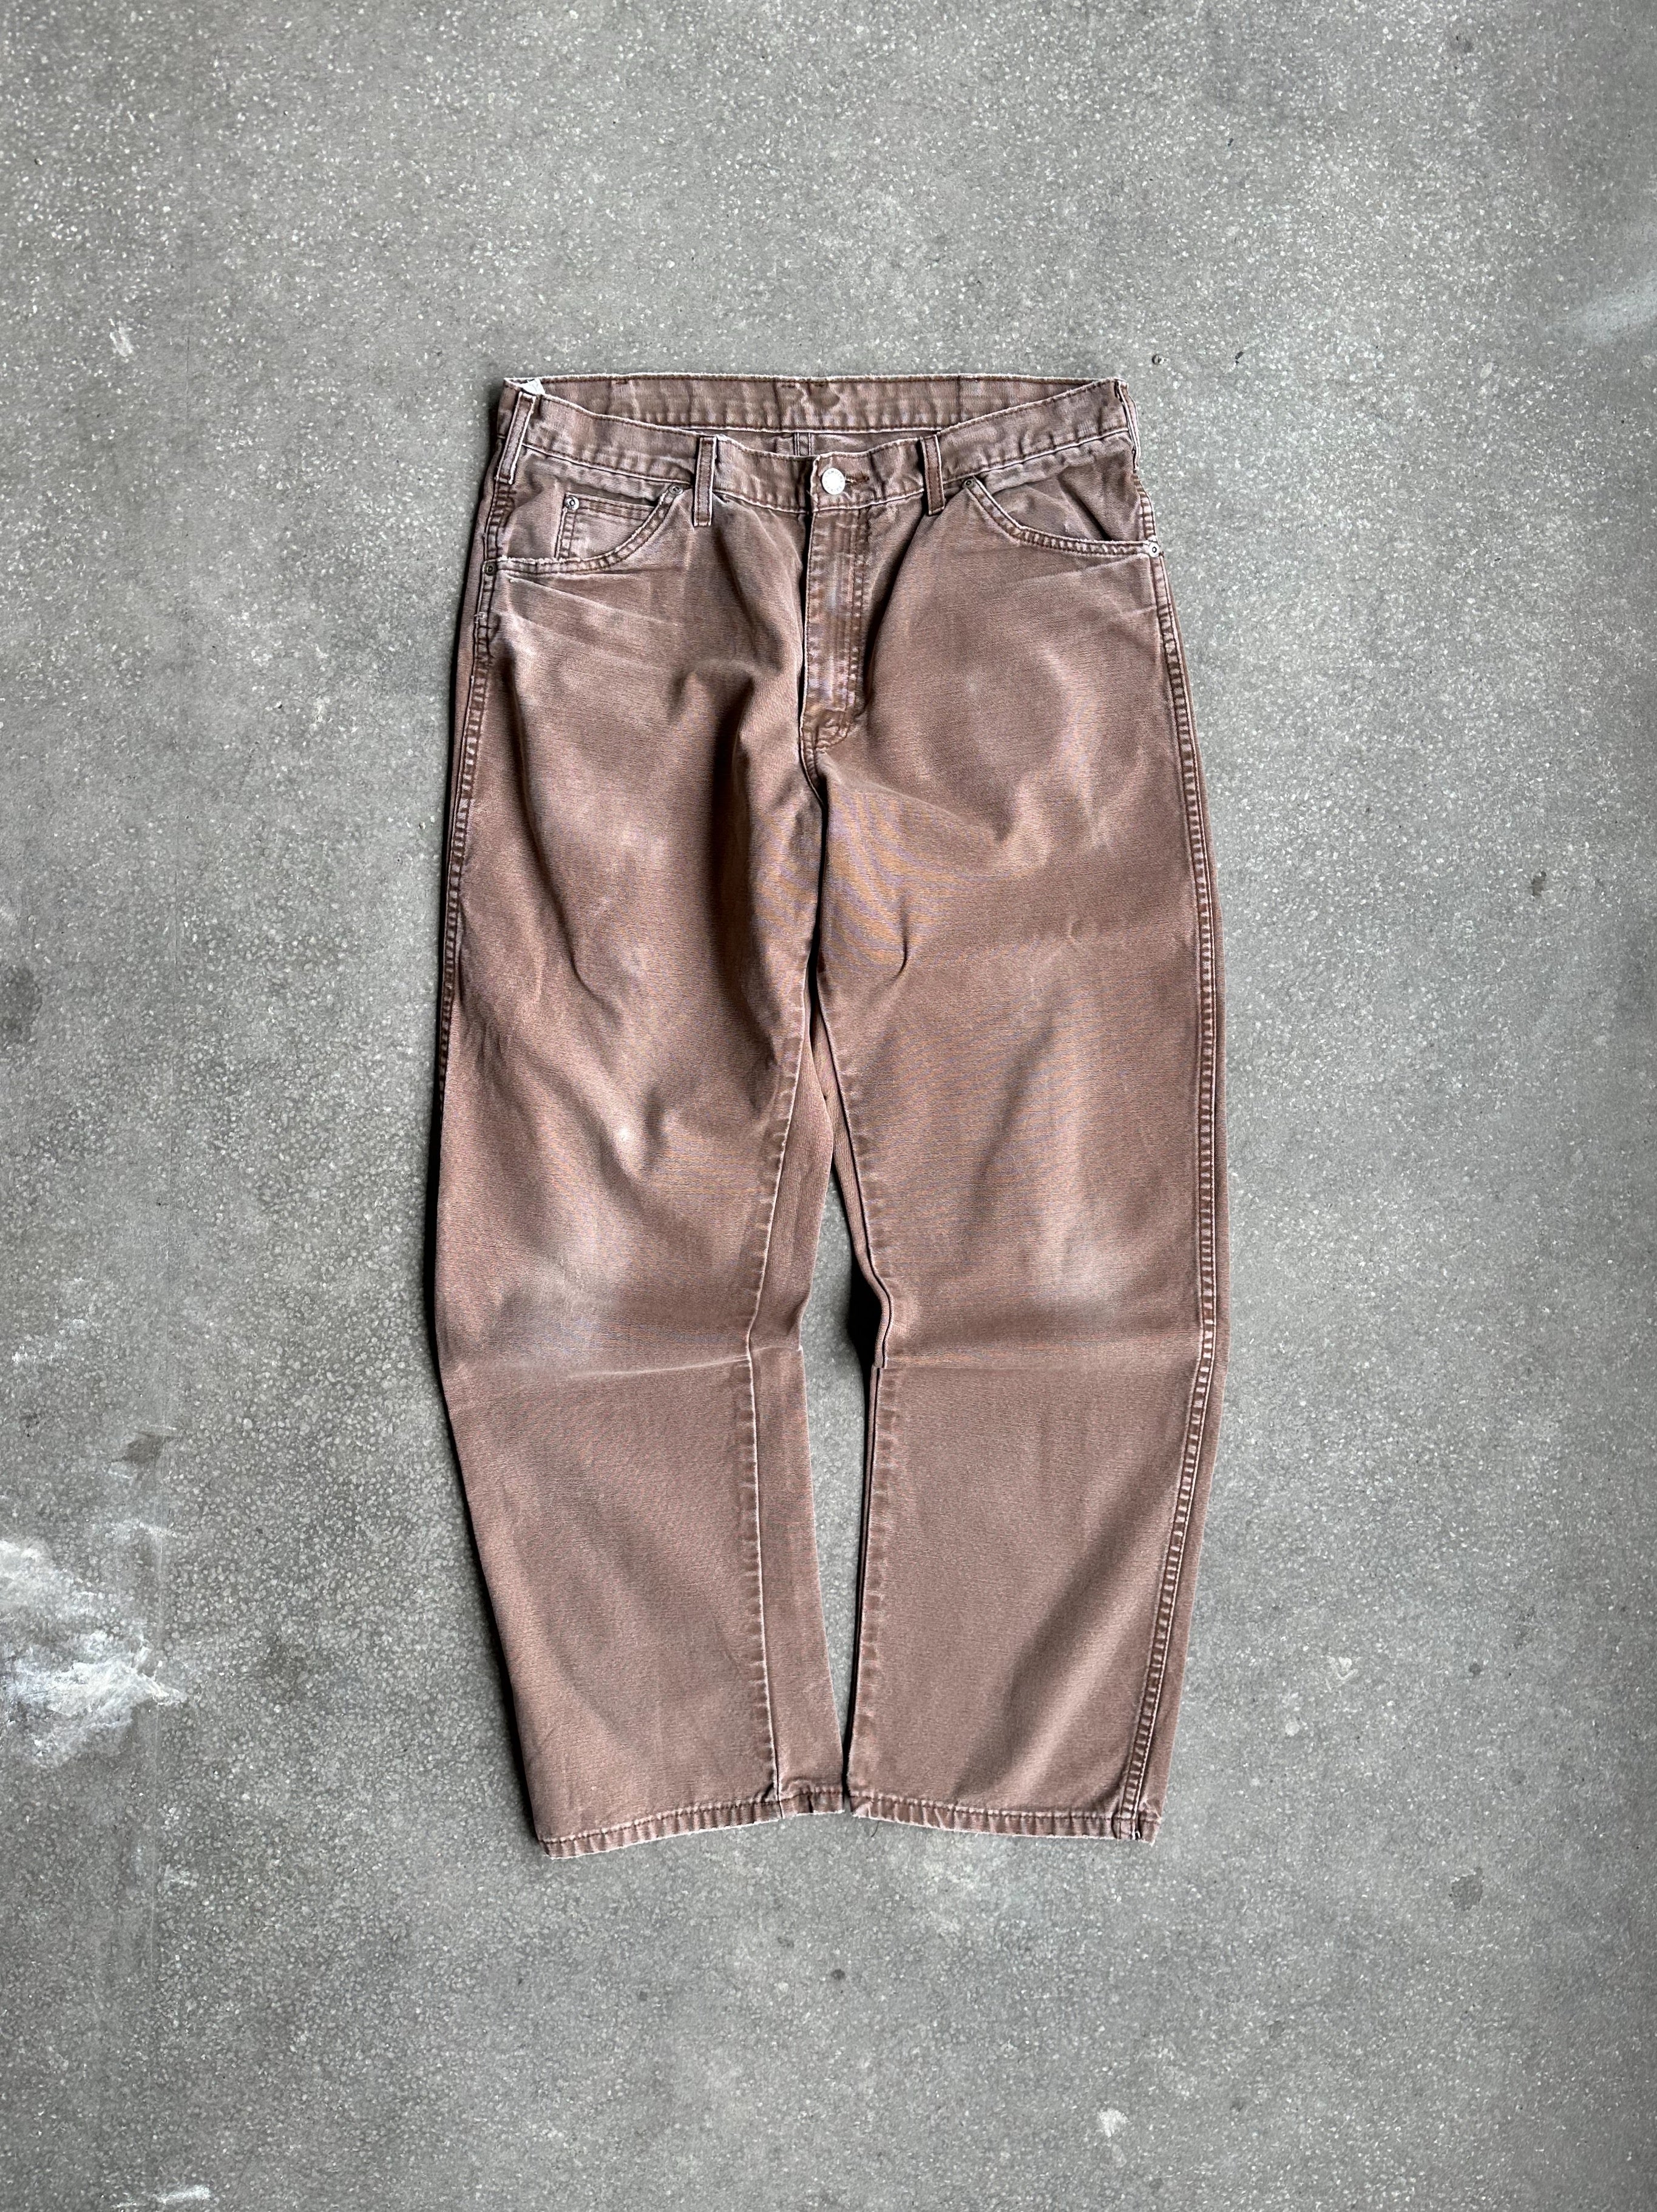 Vintage Dickies Pants - 34x32